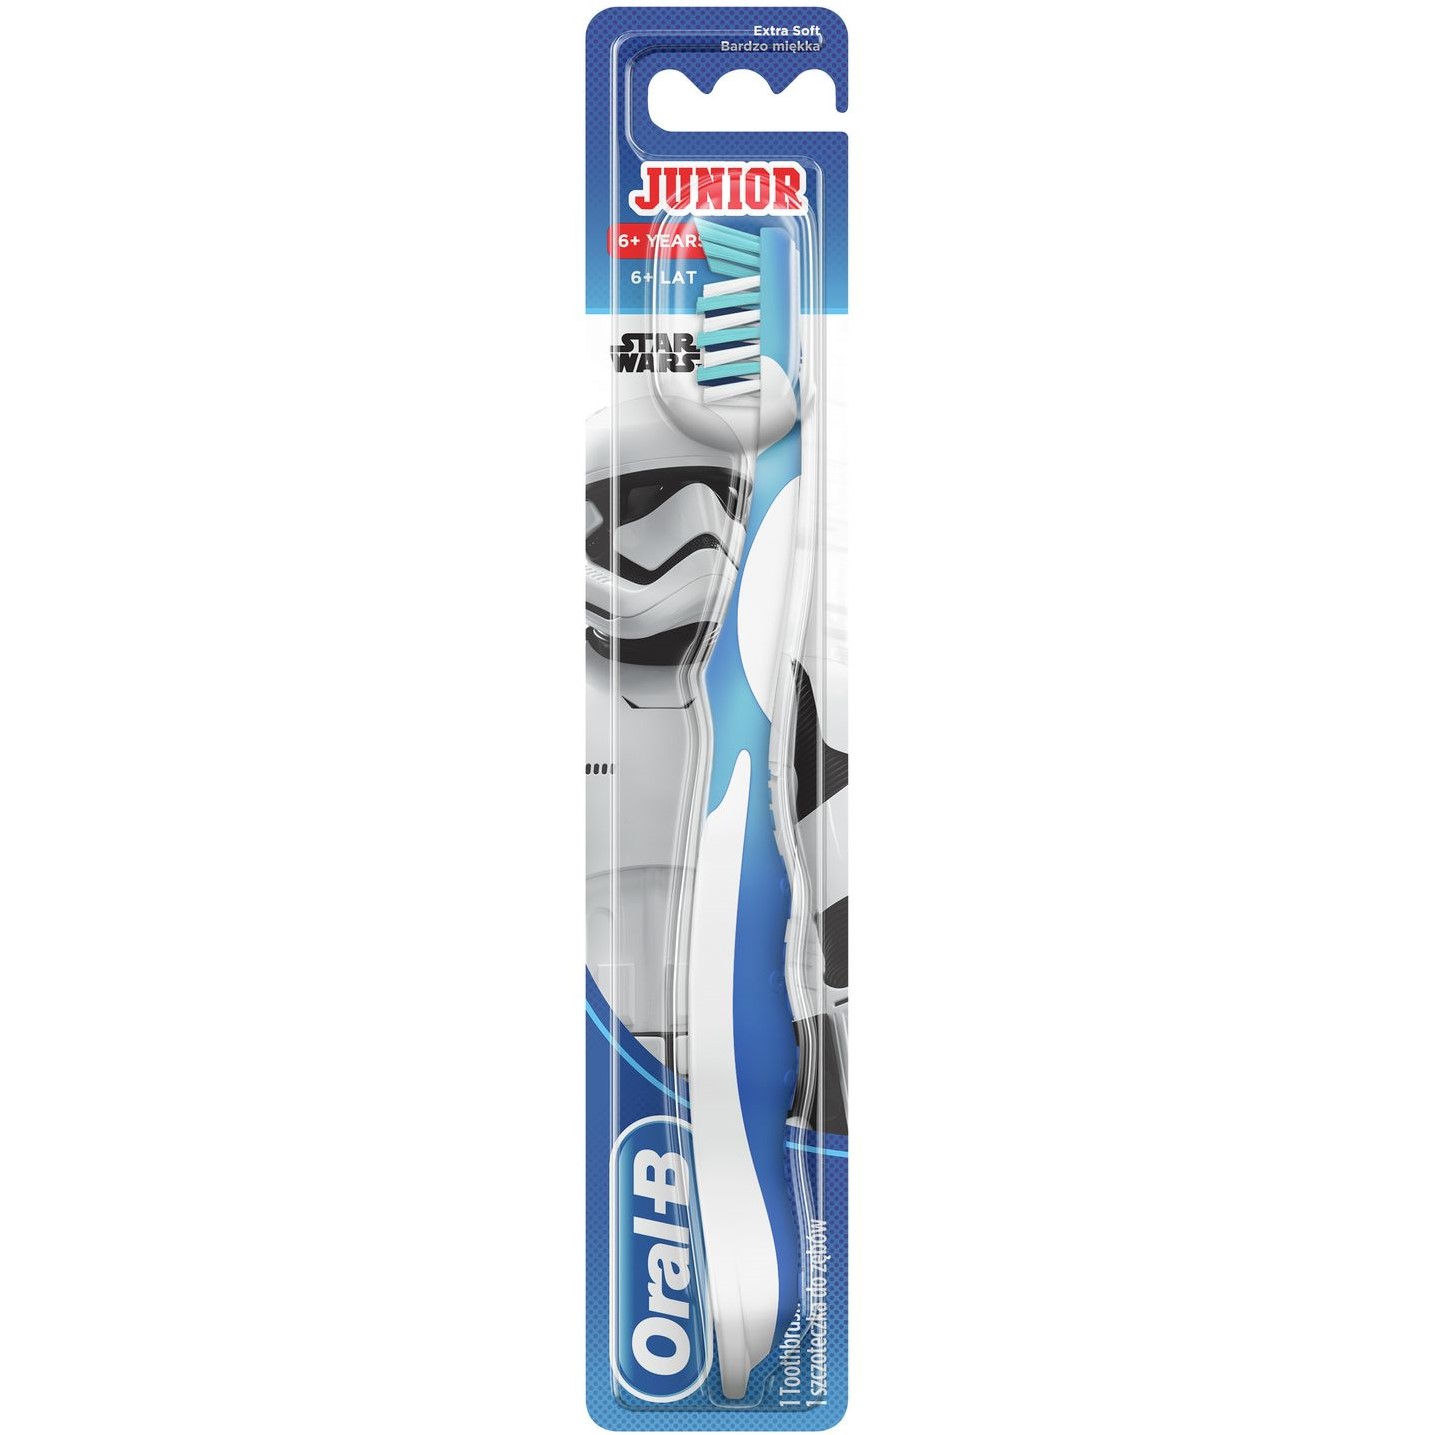 Детская зубная щетка Oral-B Junior Star Wars мягкая синий (81663268) - фото 1